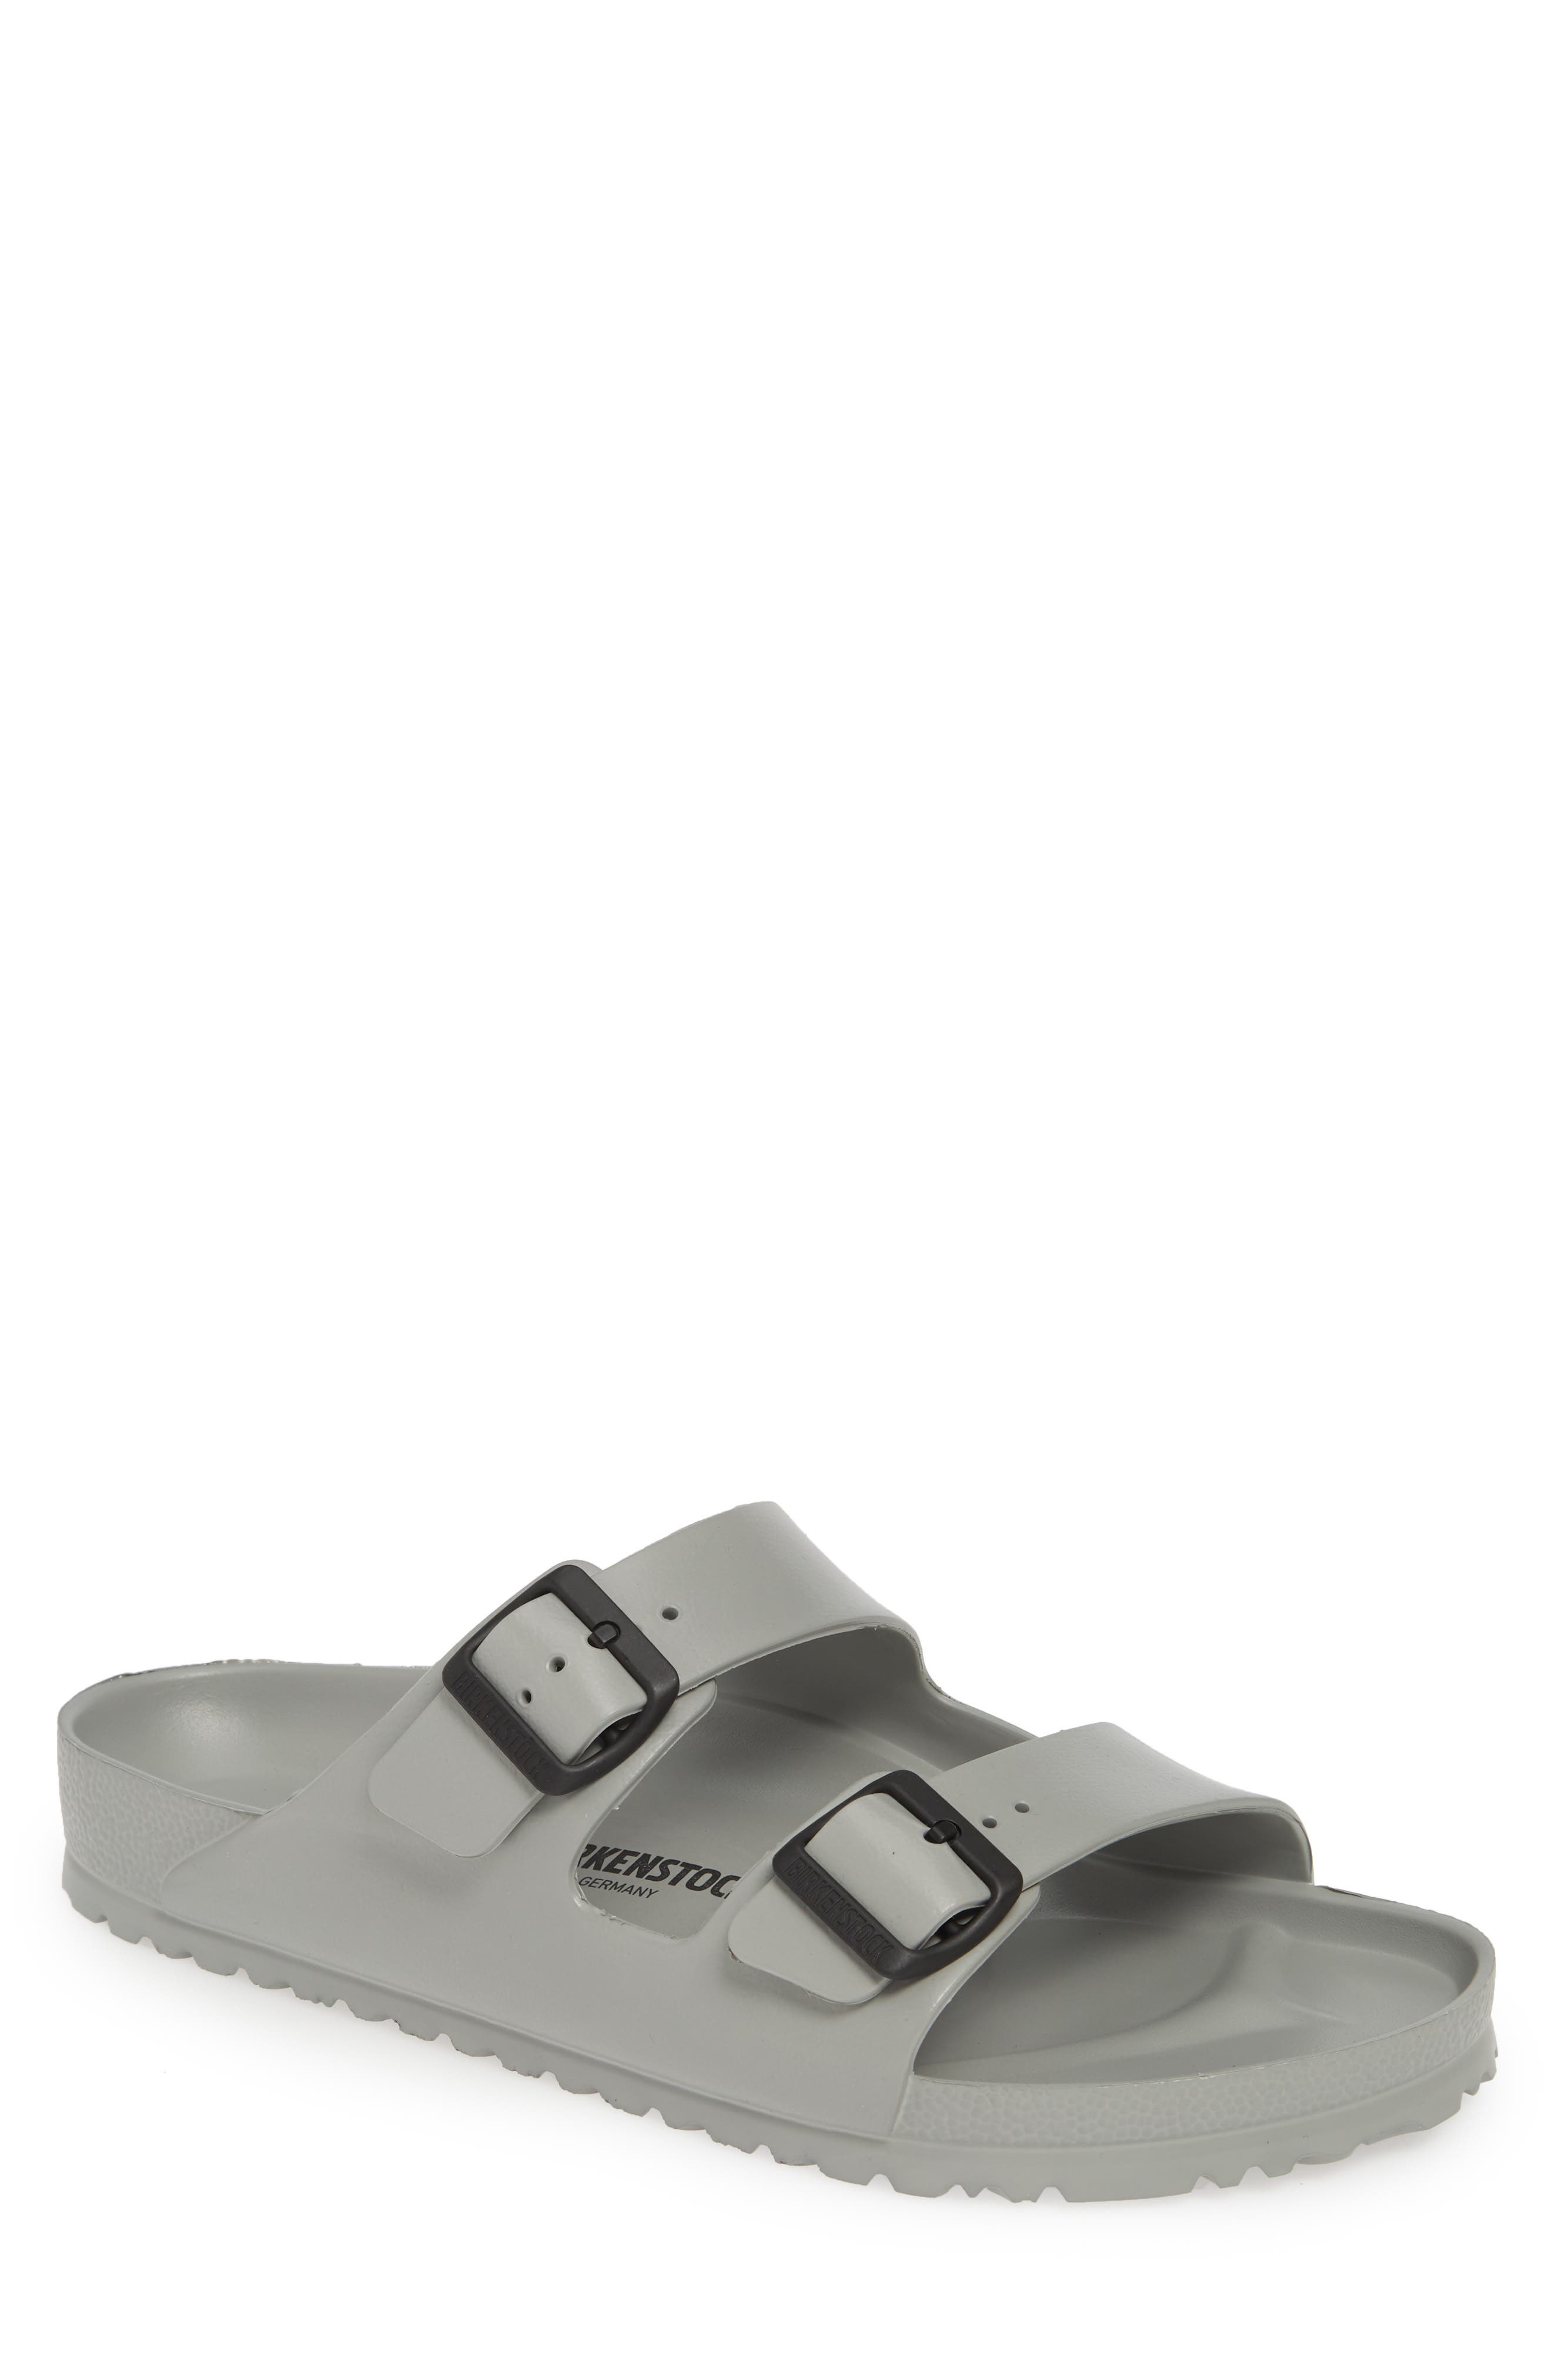 birkenstock arizona eva waterproof essentials slide sandals